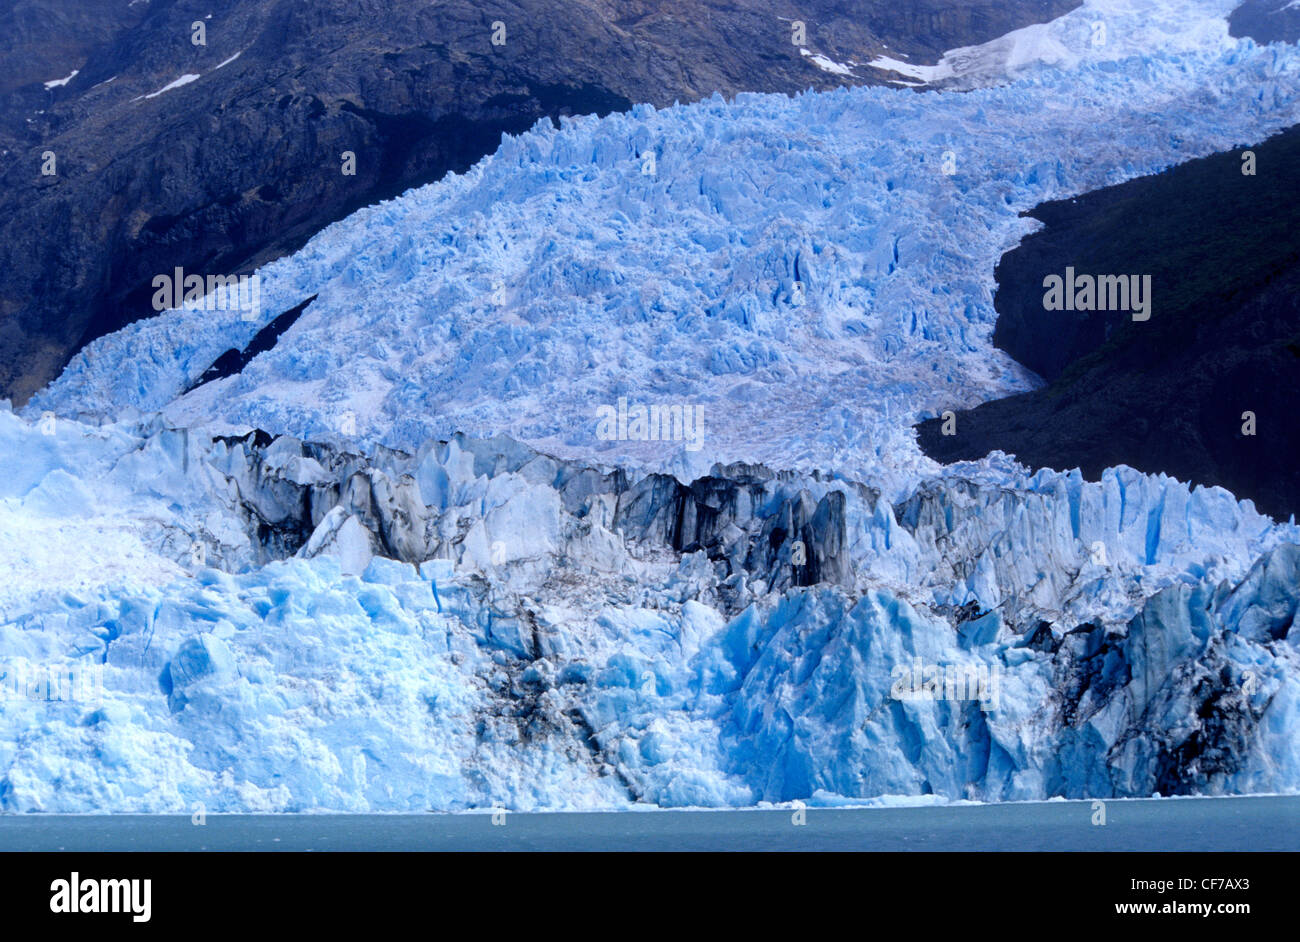 Spegazzini Glacier at Lago Argentino, Parque Nacional Los Glaciares, Patagonia, Argentina. Stock Photo